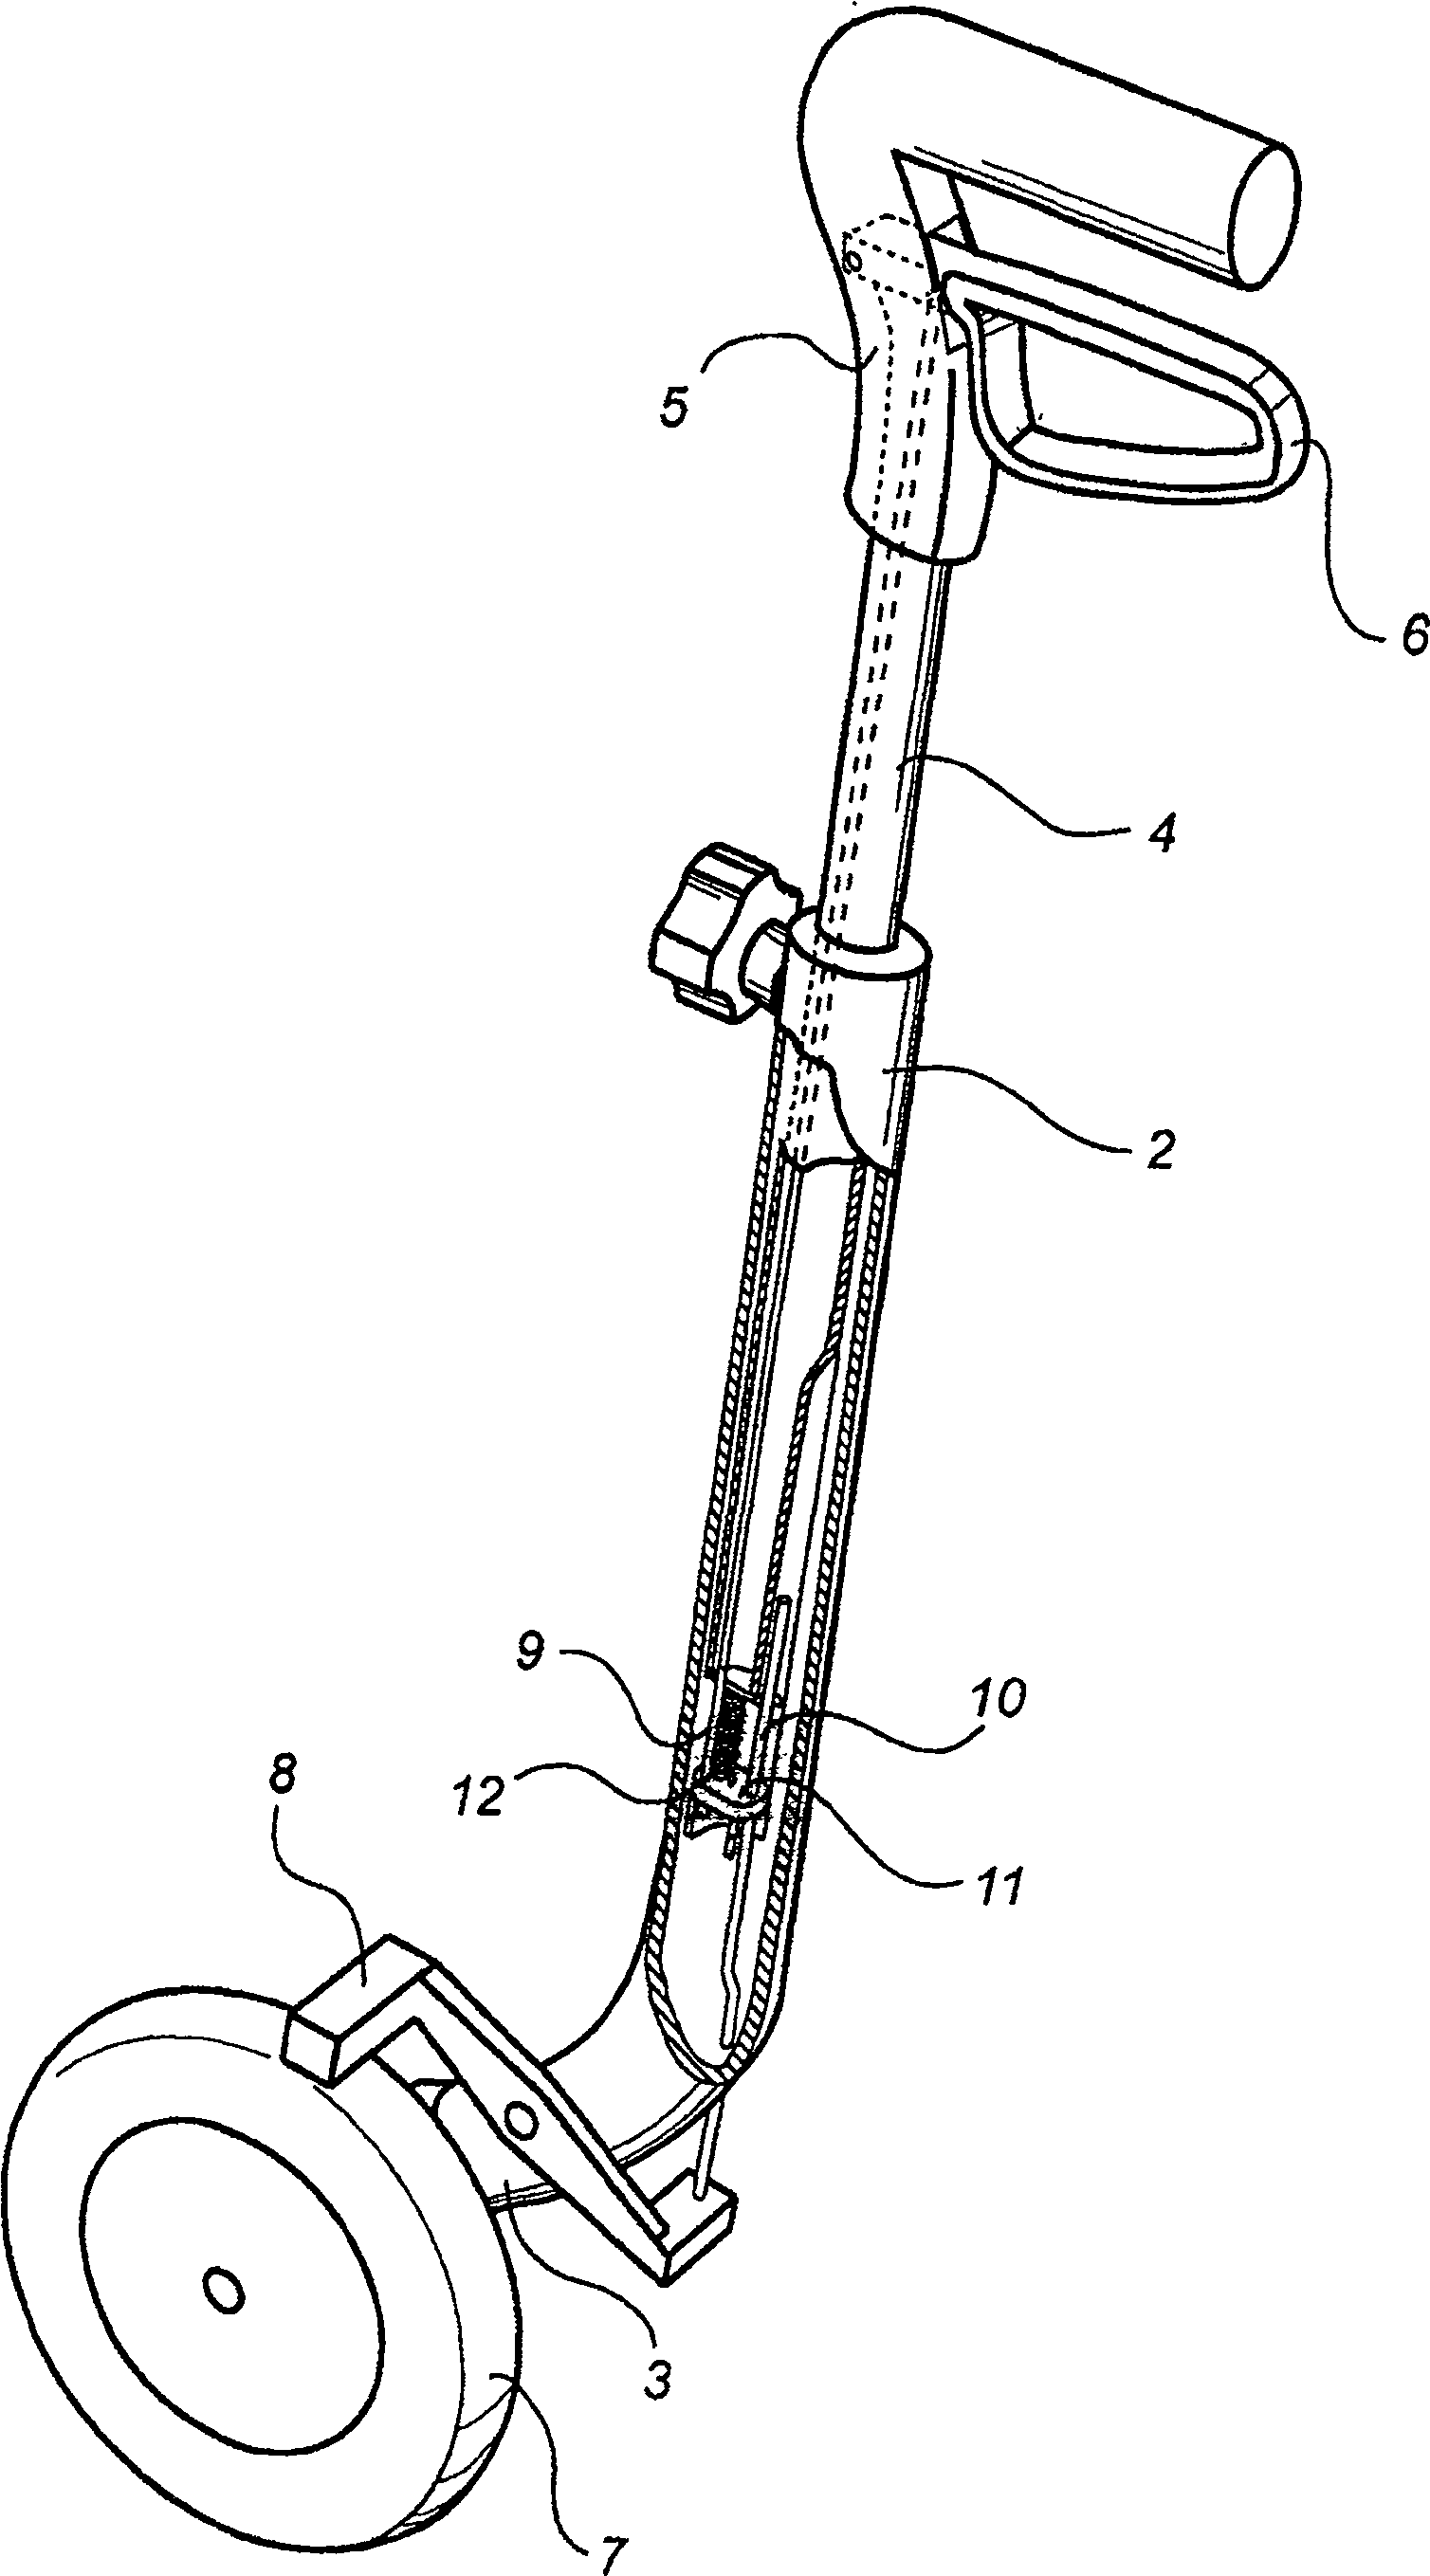 A walker device